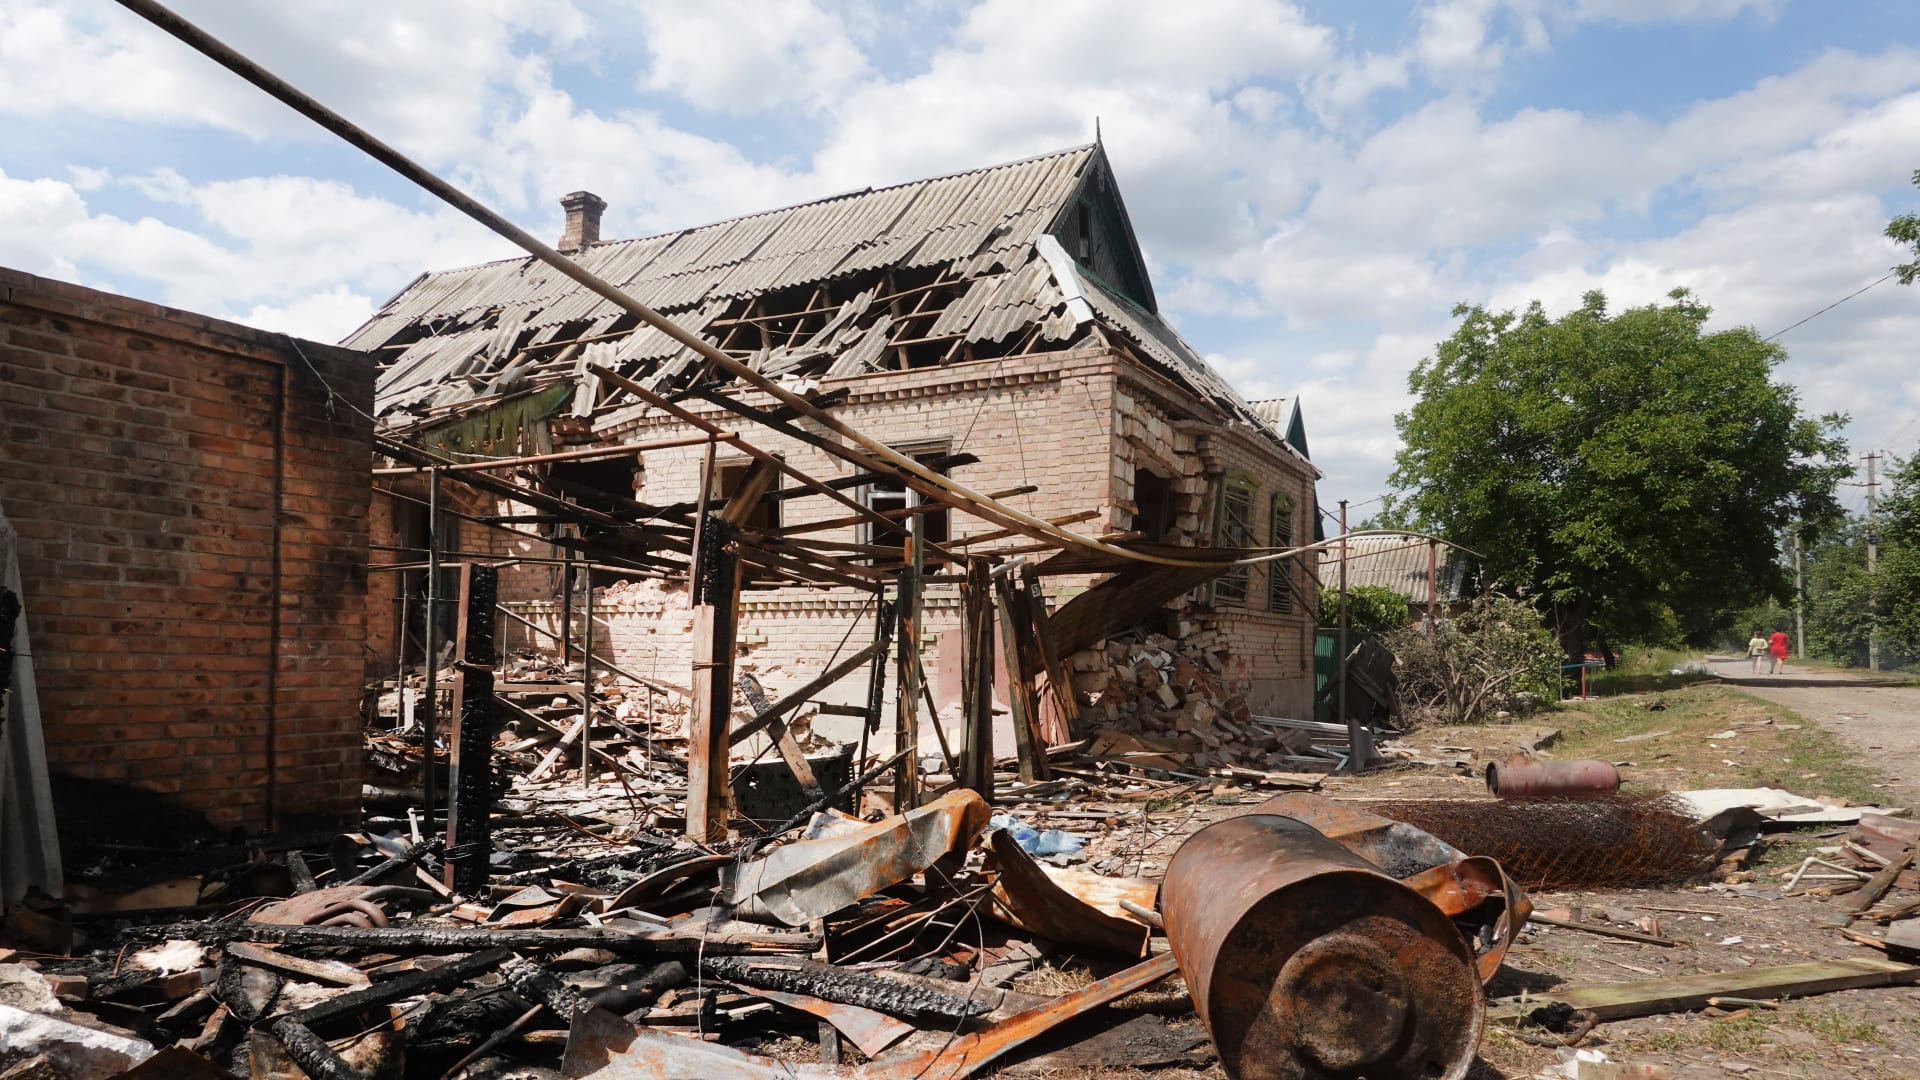 فيديو من "درون" يظهر الدمار الهائل في ثاني أكبر مدن أوكرانيا بعد أشهر من القصف الروسي